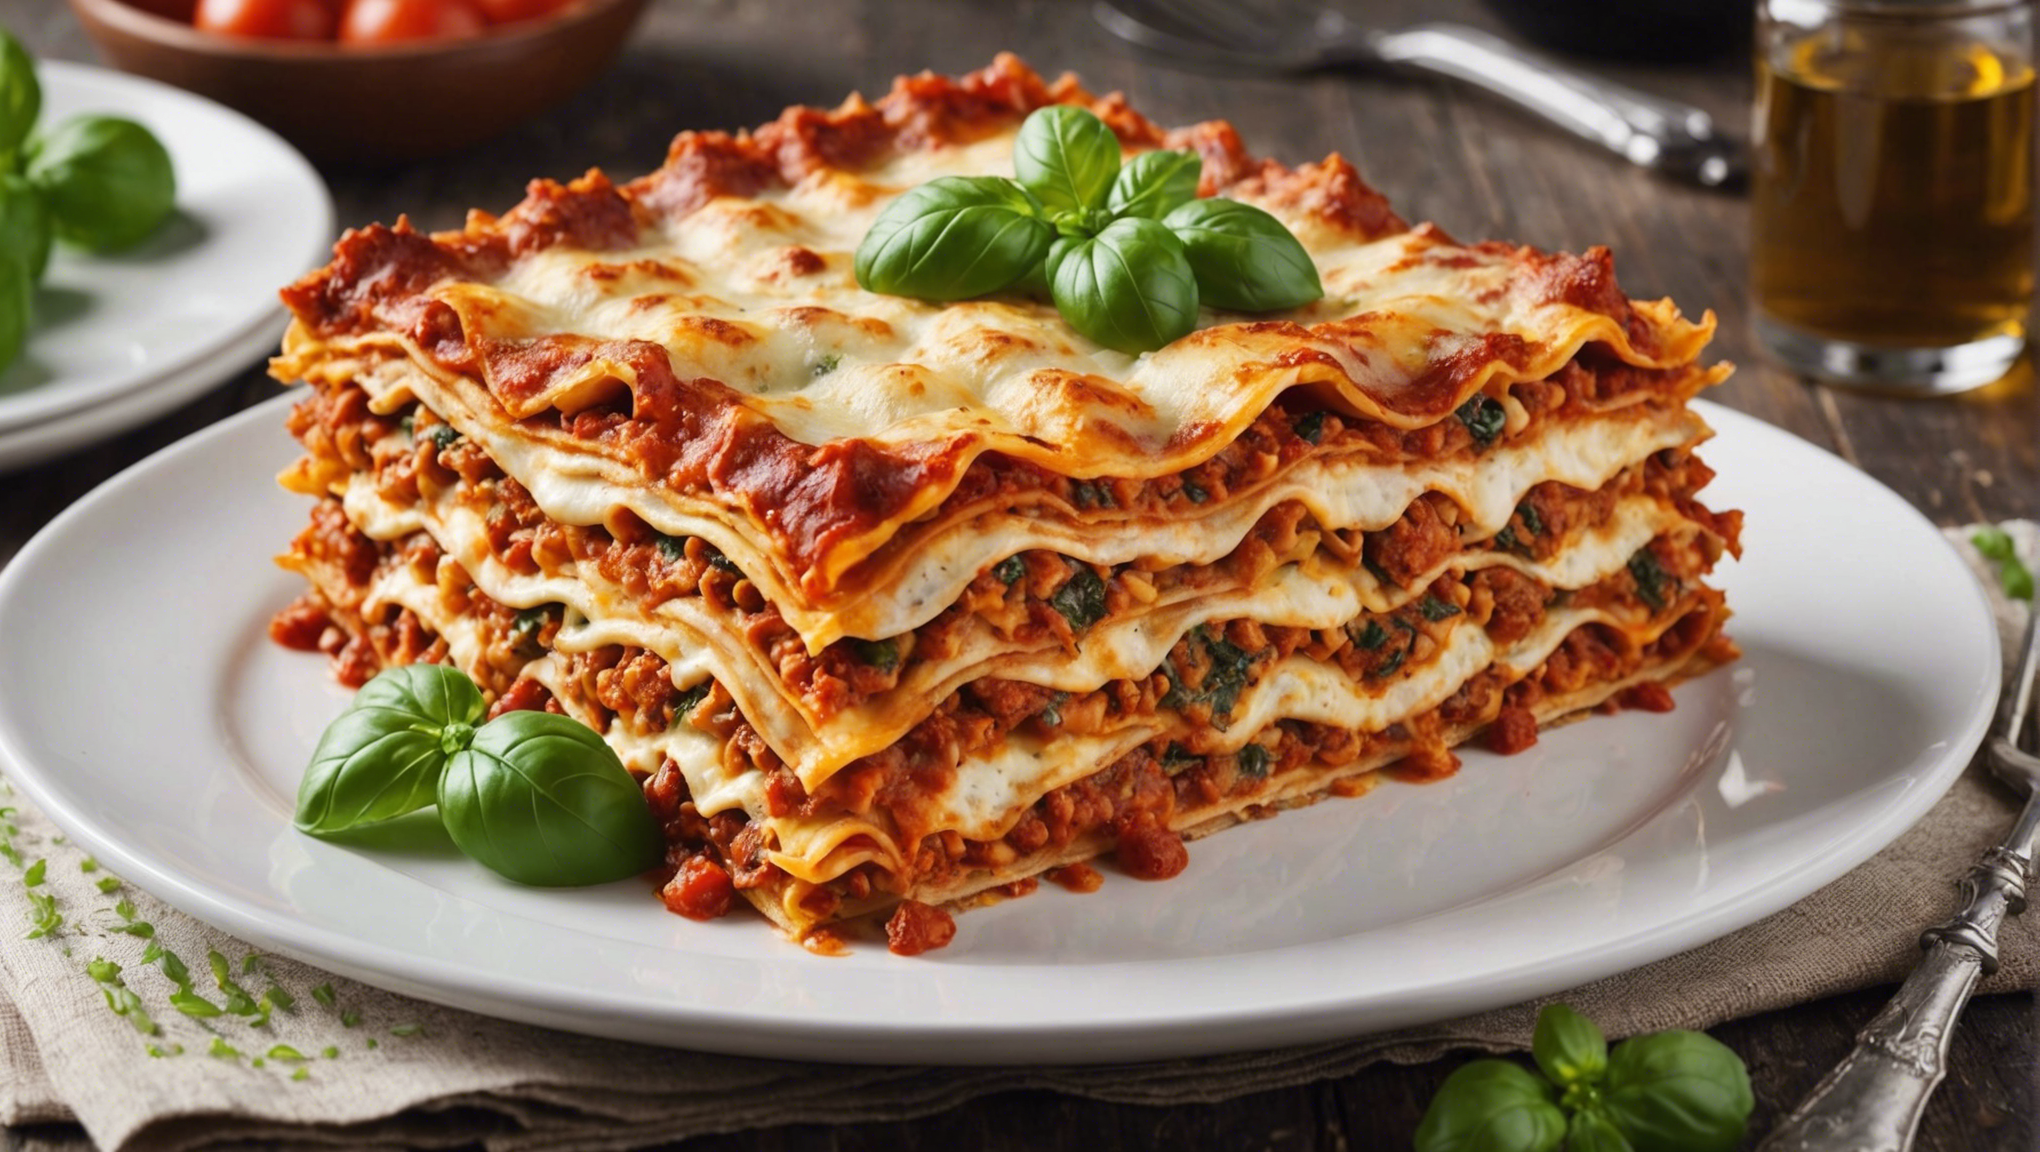 découvrez les secrets des lasagnes végétariennes savoureuses avec les ingrédients clés pour une recette riche en goût et en saveurs.